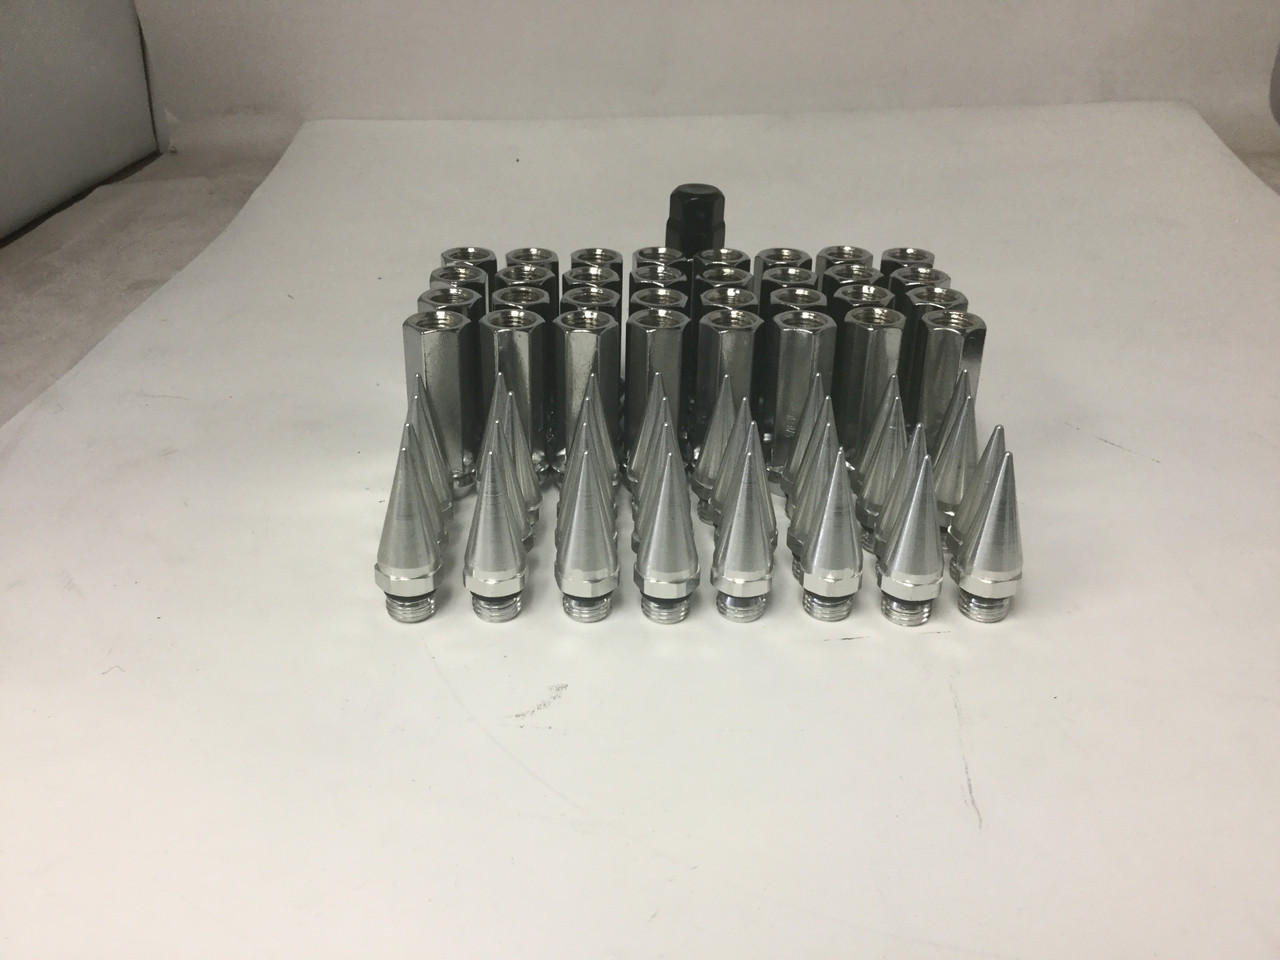 Set 32 Chrome Spike Tall Lug Nuts 14mm x 2.0 2" Long 8 Lug Wheel Kit